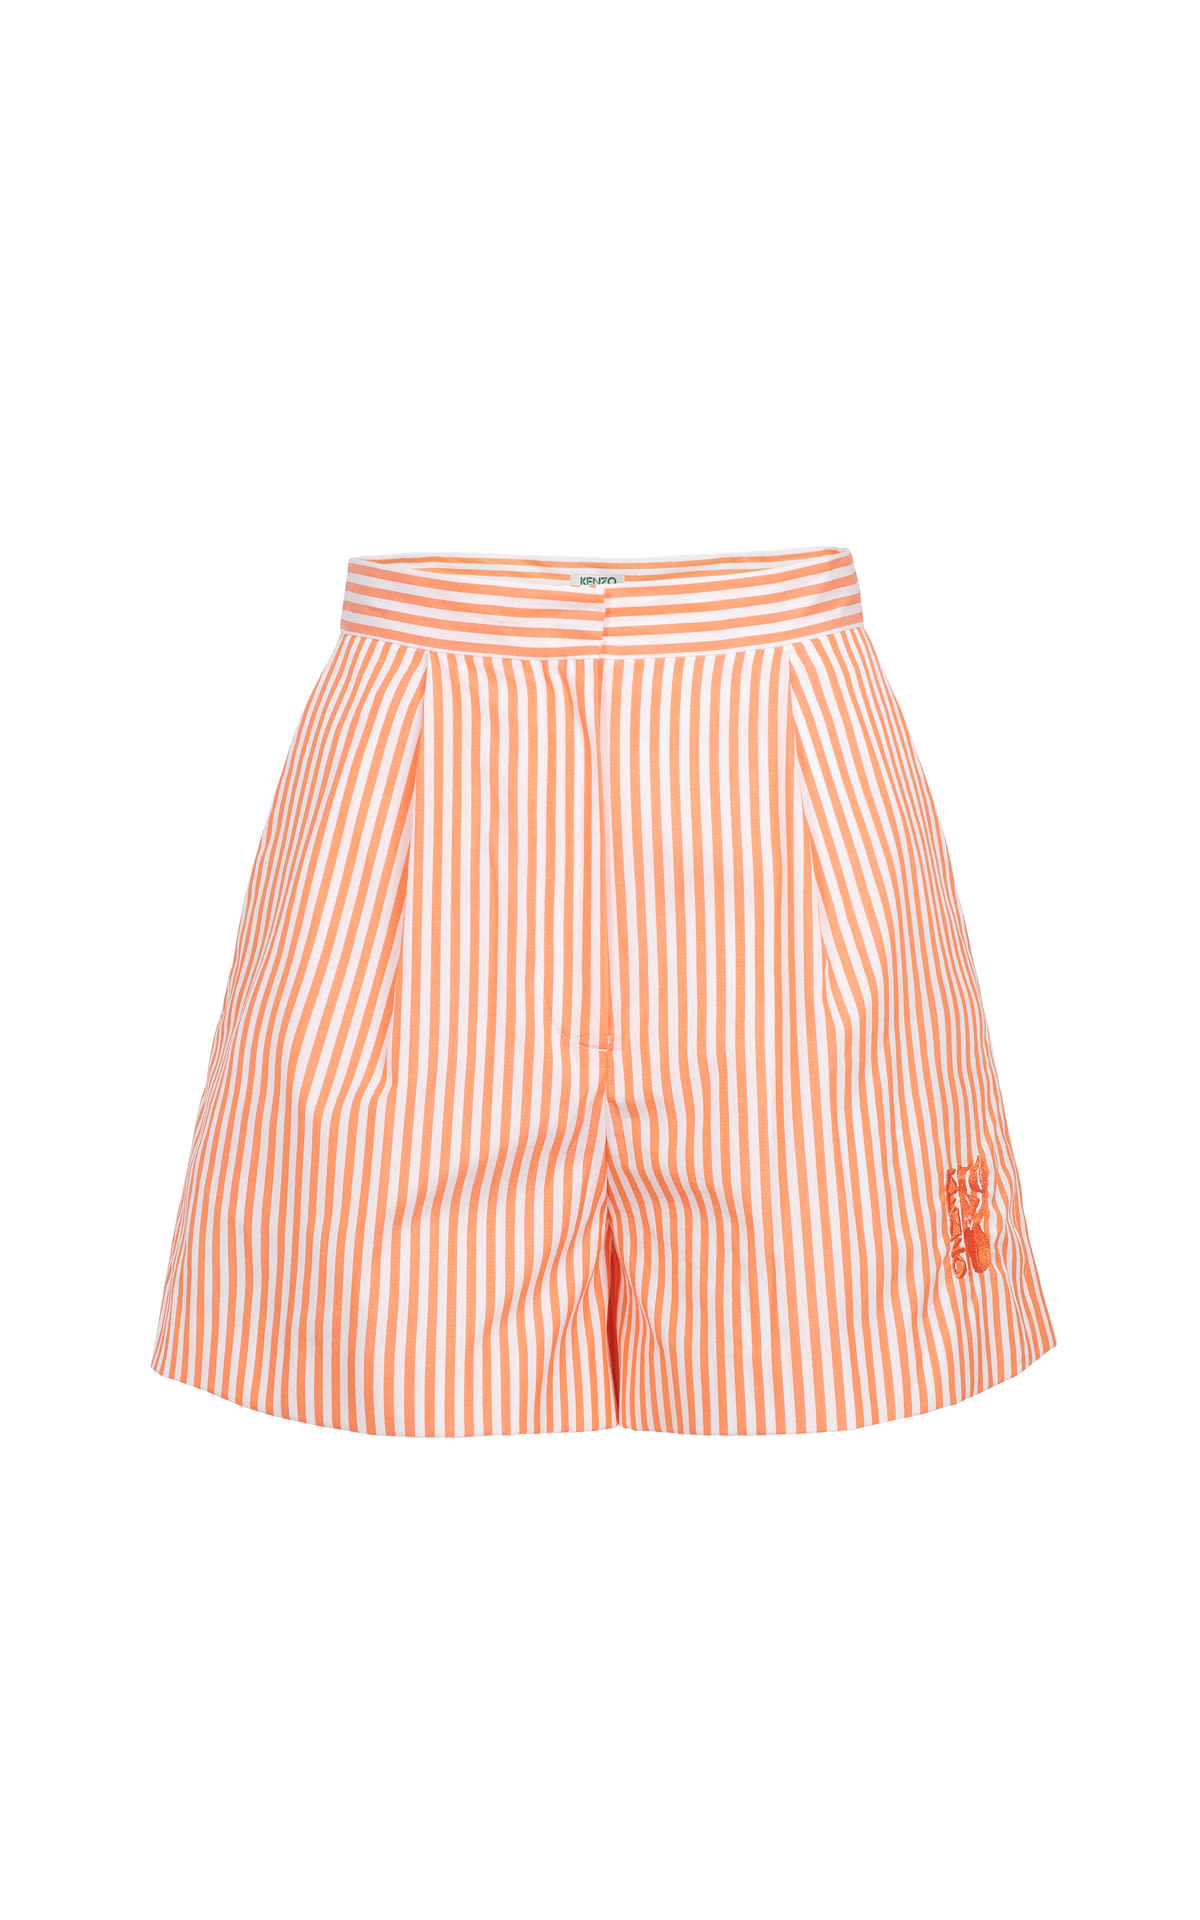 Kenzo orange striped shorts